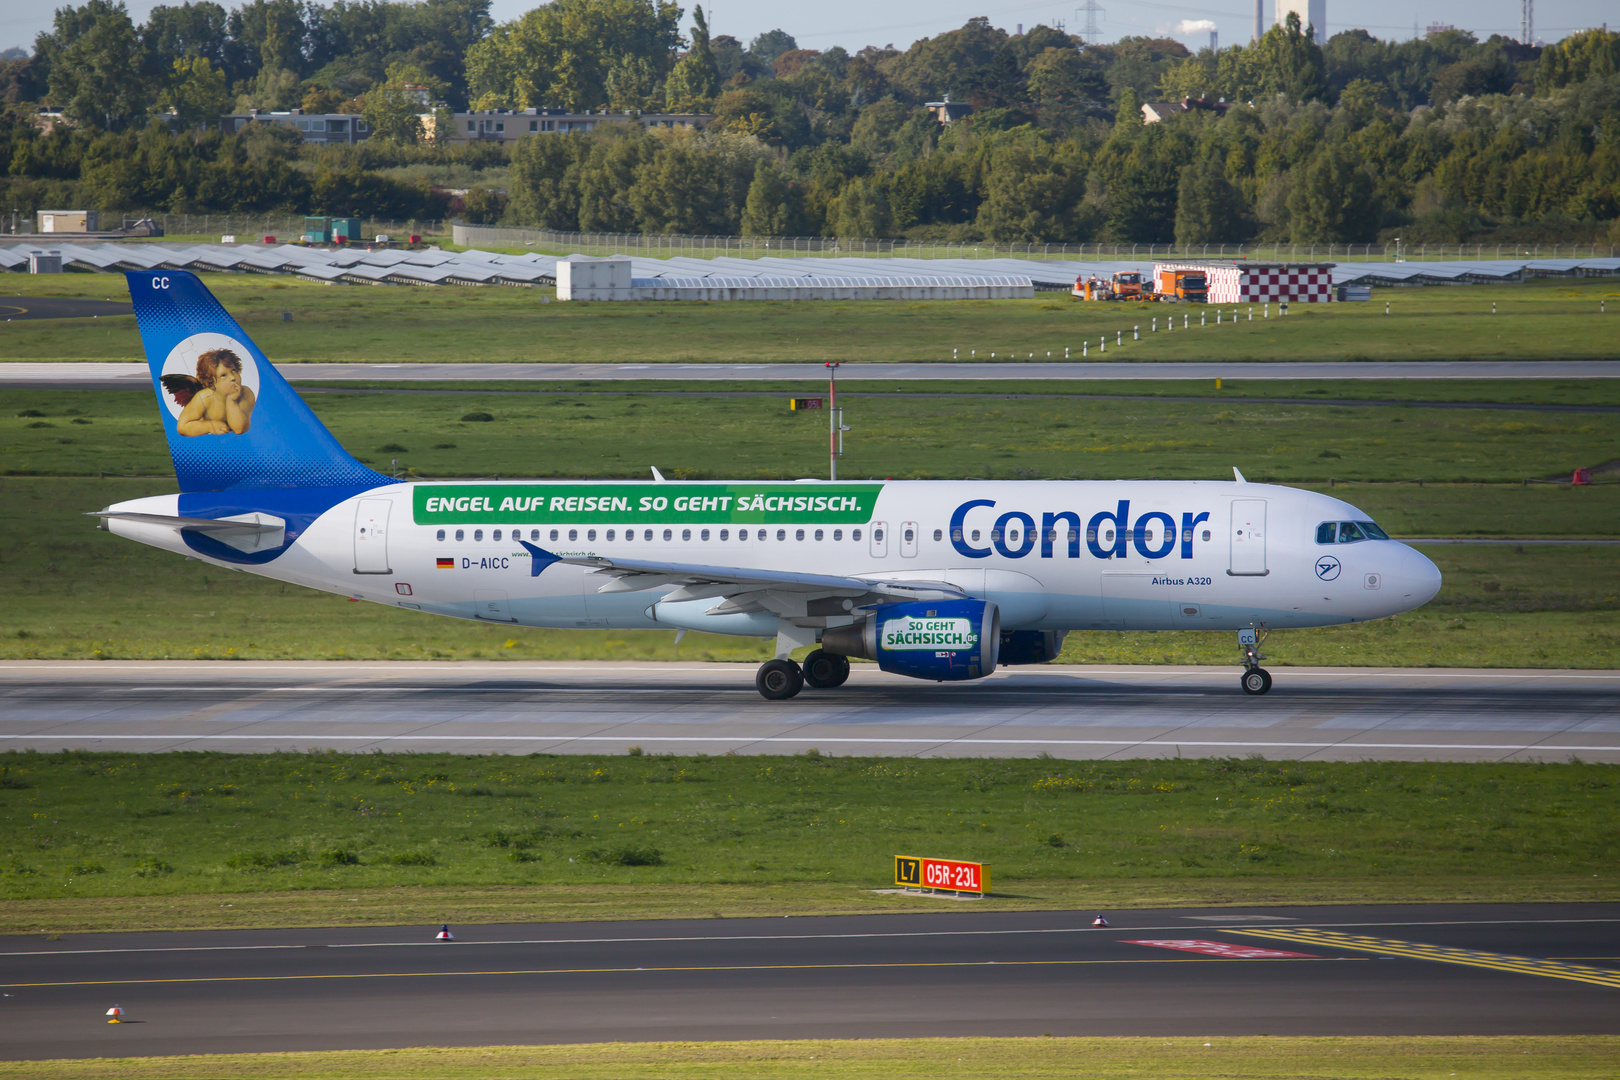 Condor Airbus A320-212 ( Engel auf Reisen, so geht sächsich )